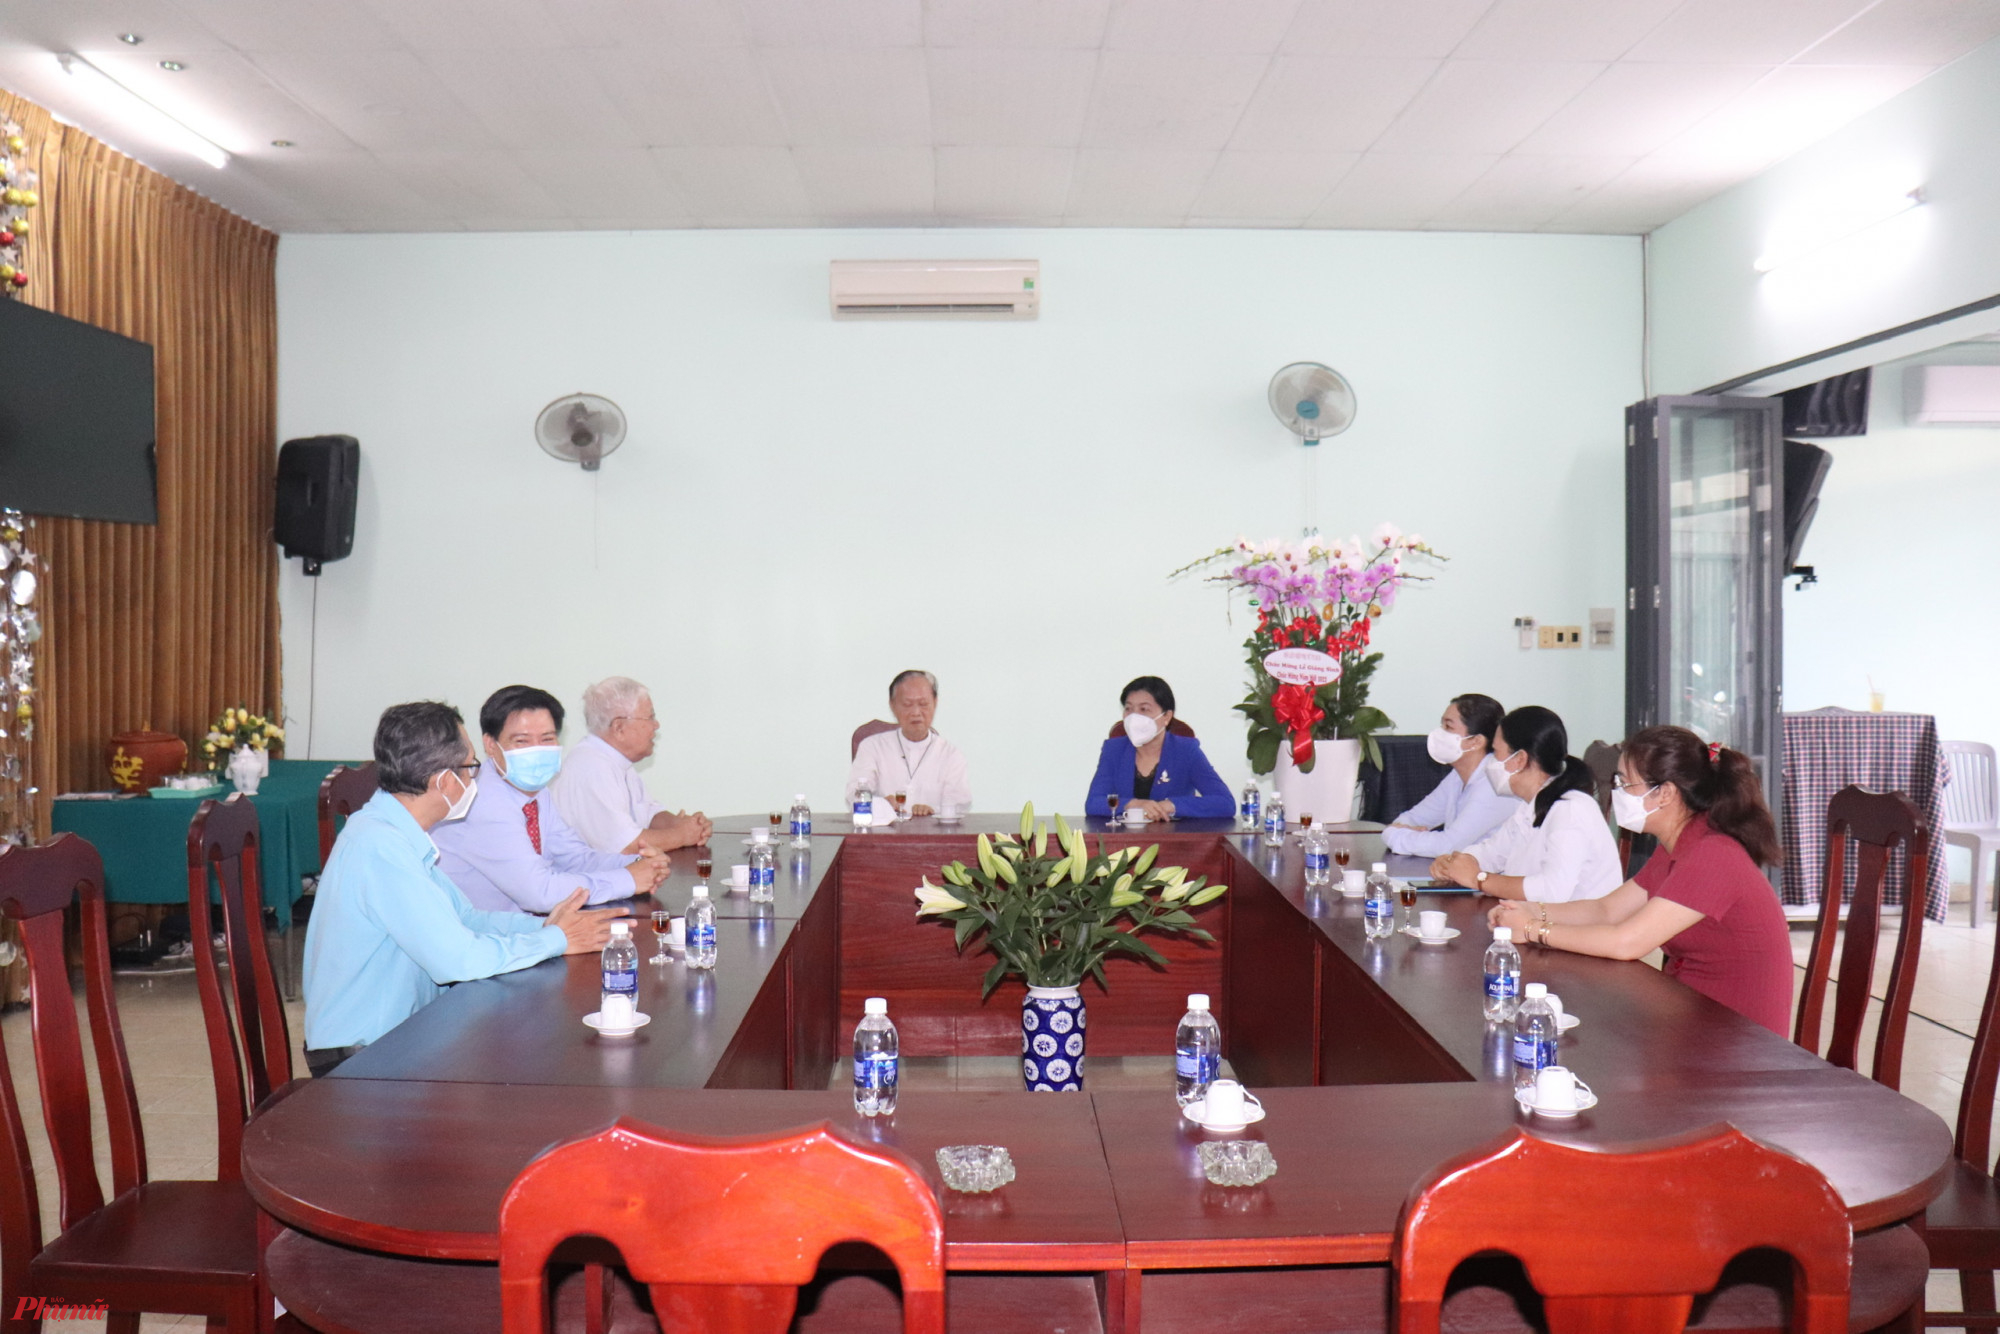 Chị Nguyễn Trần Phượng Trân - Thành ủy viên, Chủ tịch Hội LHPN TP. Hồ Chí Minh thăm và chúc mừng Ủy ban đoàn kết Công giáo TP. HCM